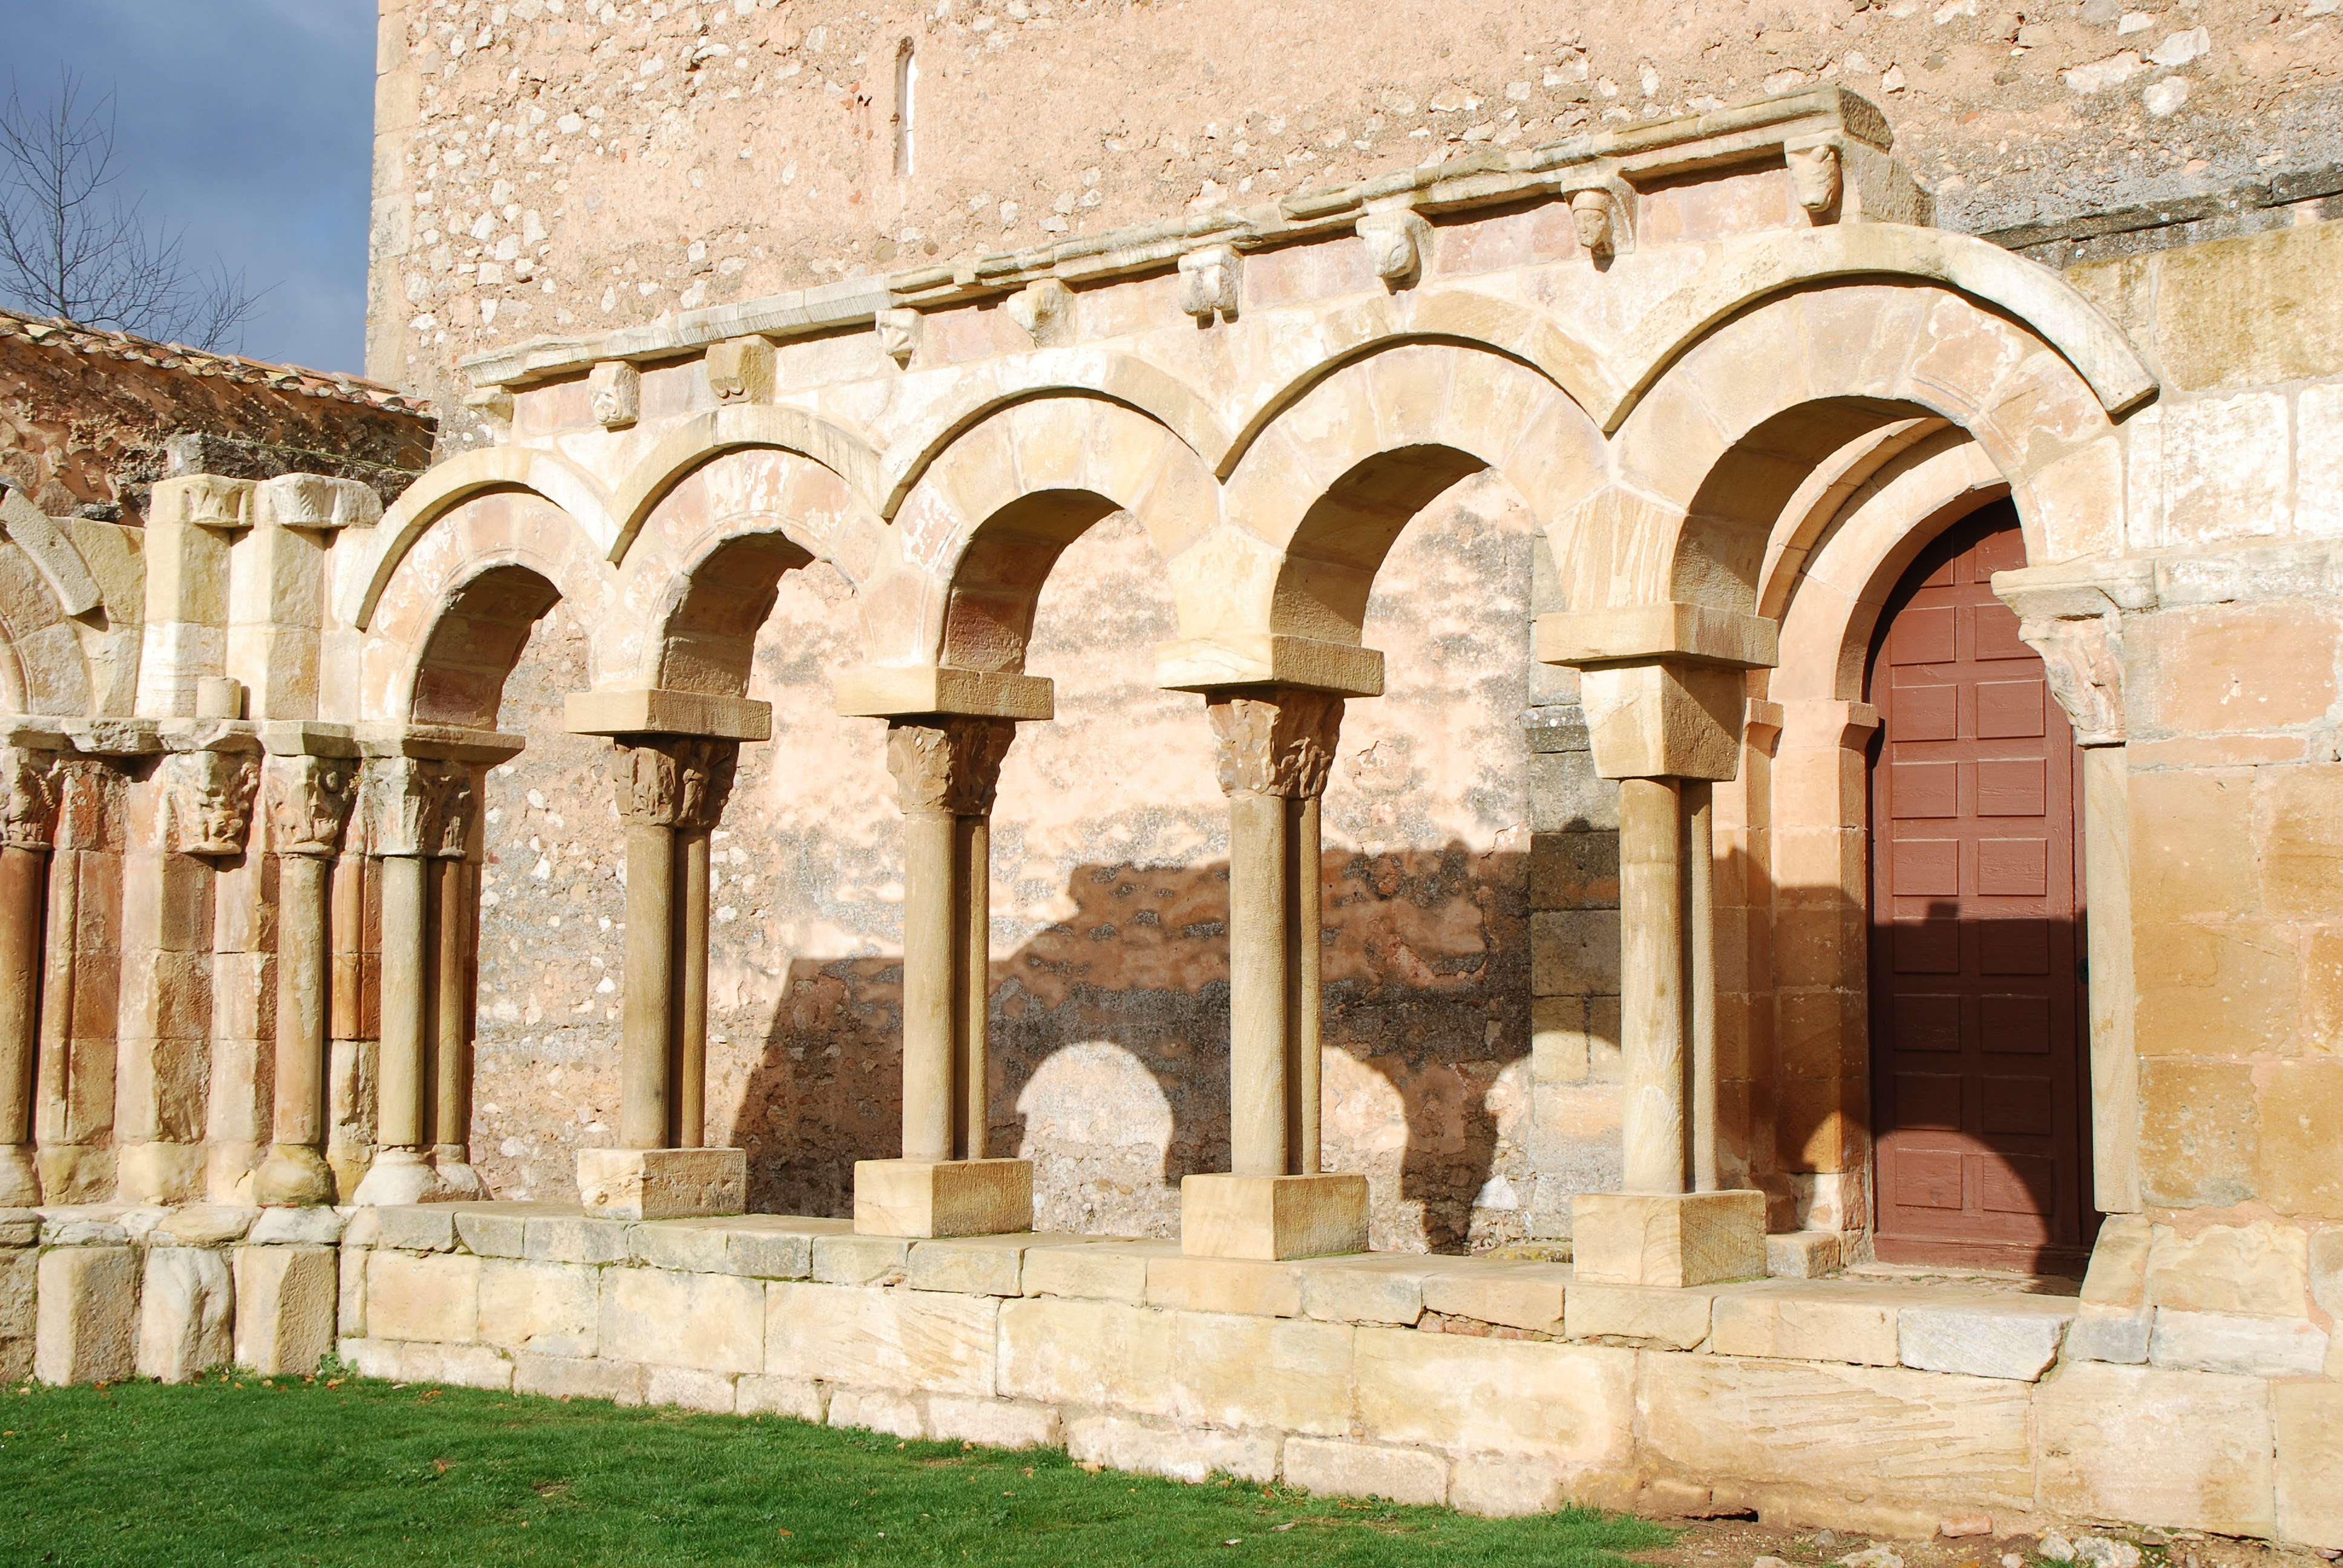 Monasterio de San Juan de Duero. Un enigma - Blogs de España - Monasterio de San Juan de Duero (5)